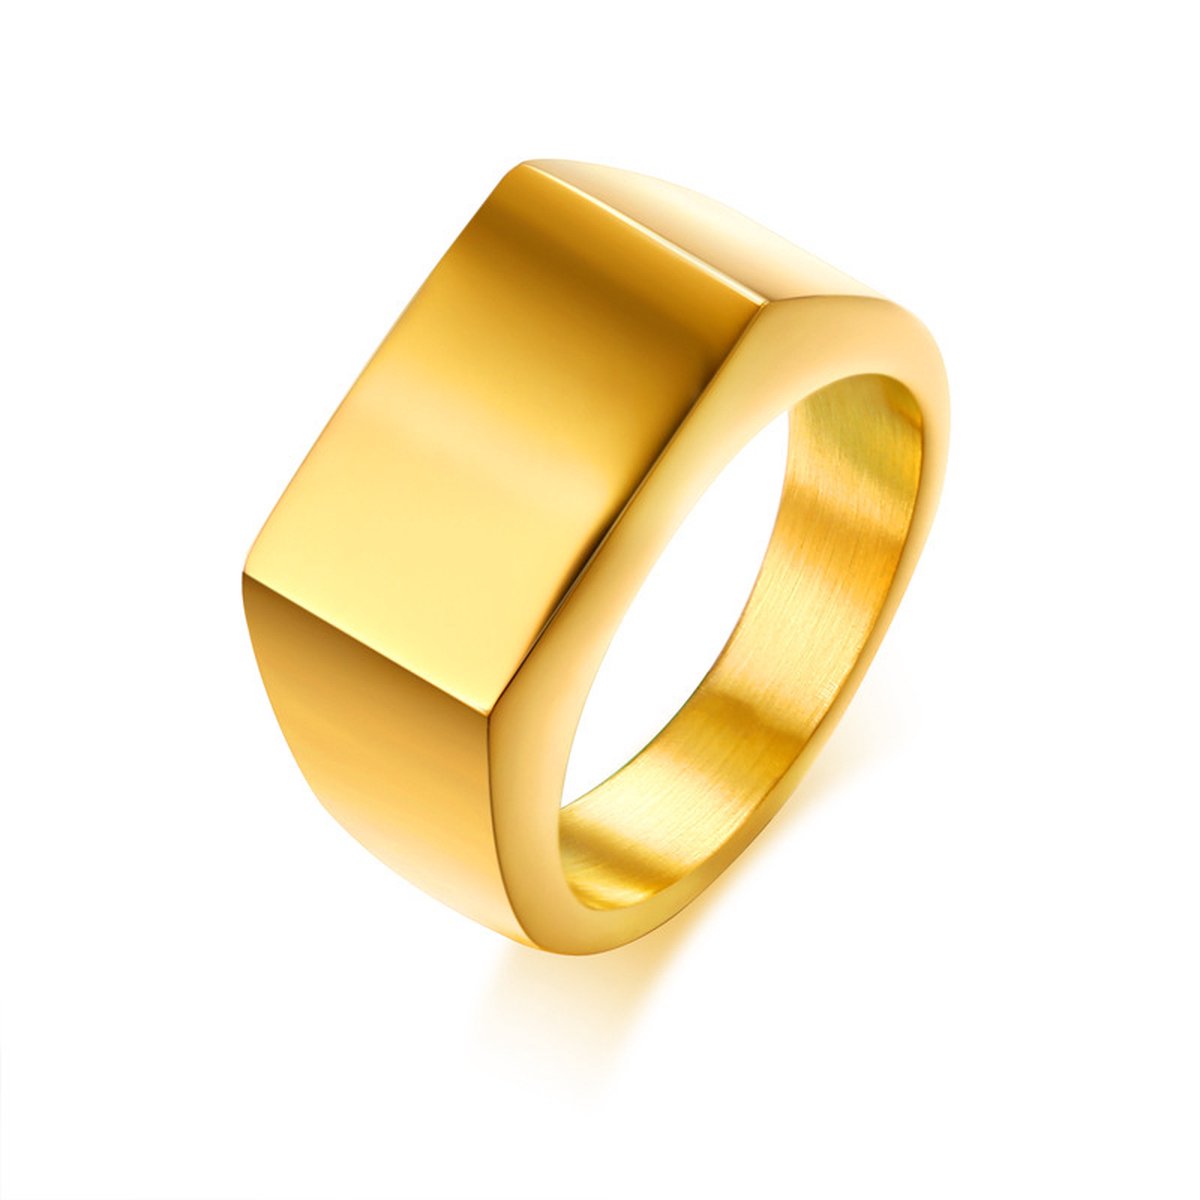 Zegelring goud Mauro Vinci - Ringen goud heren - met geschenkverpakking - Gouden zegel ring - maat 11